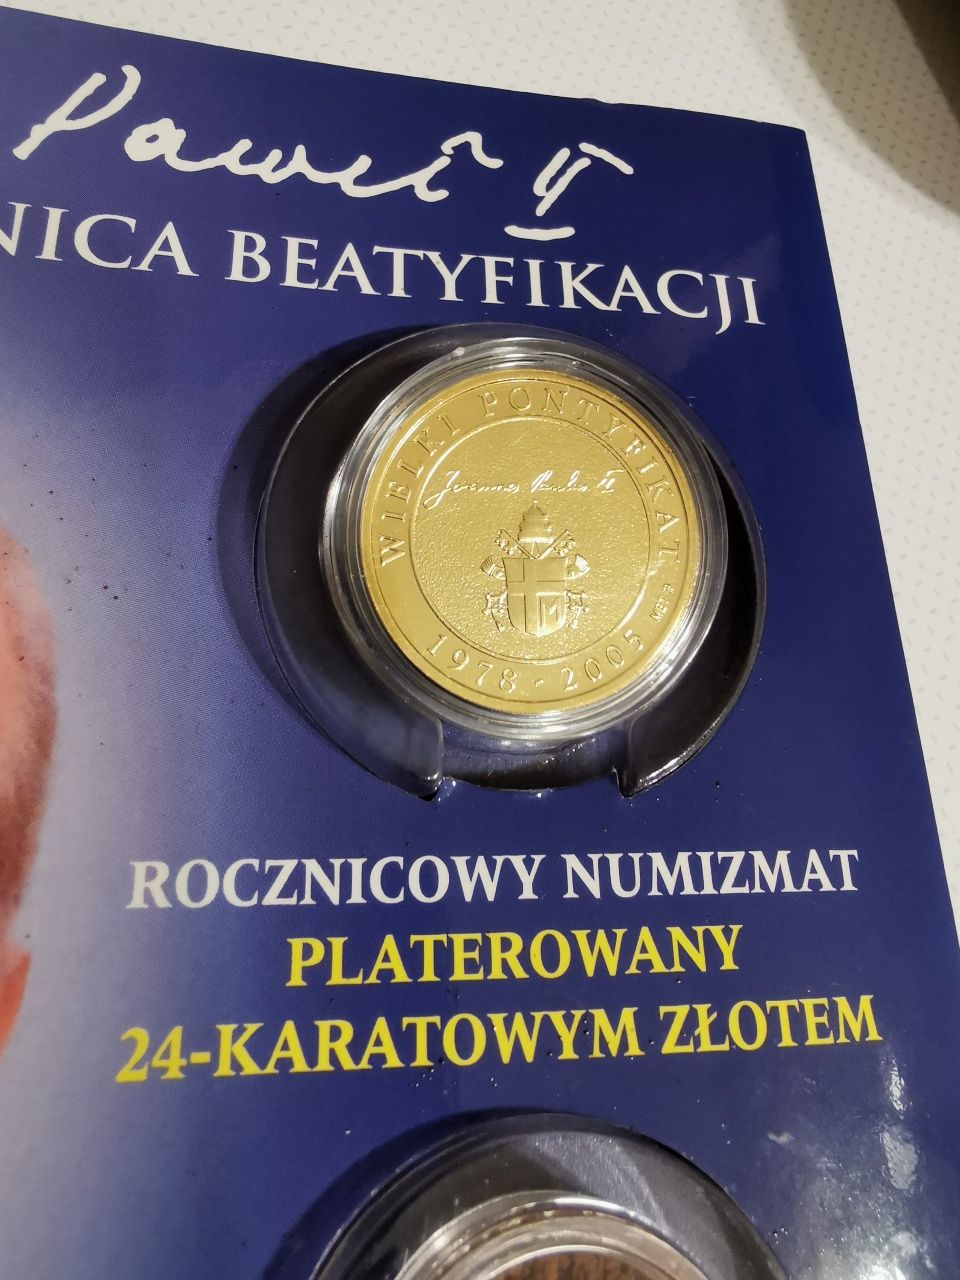 Jan Paweł II medal oraz Numizmat wysyłka w cenie